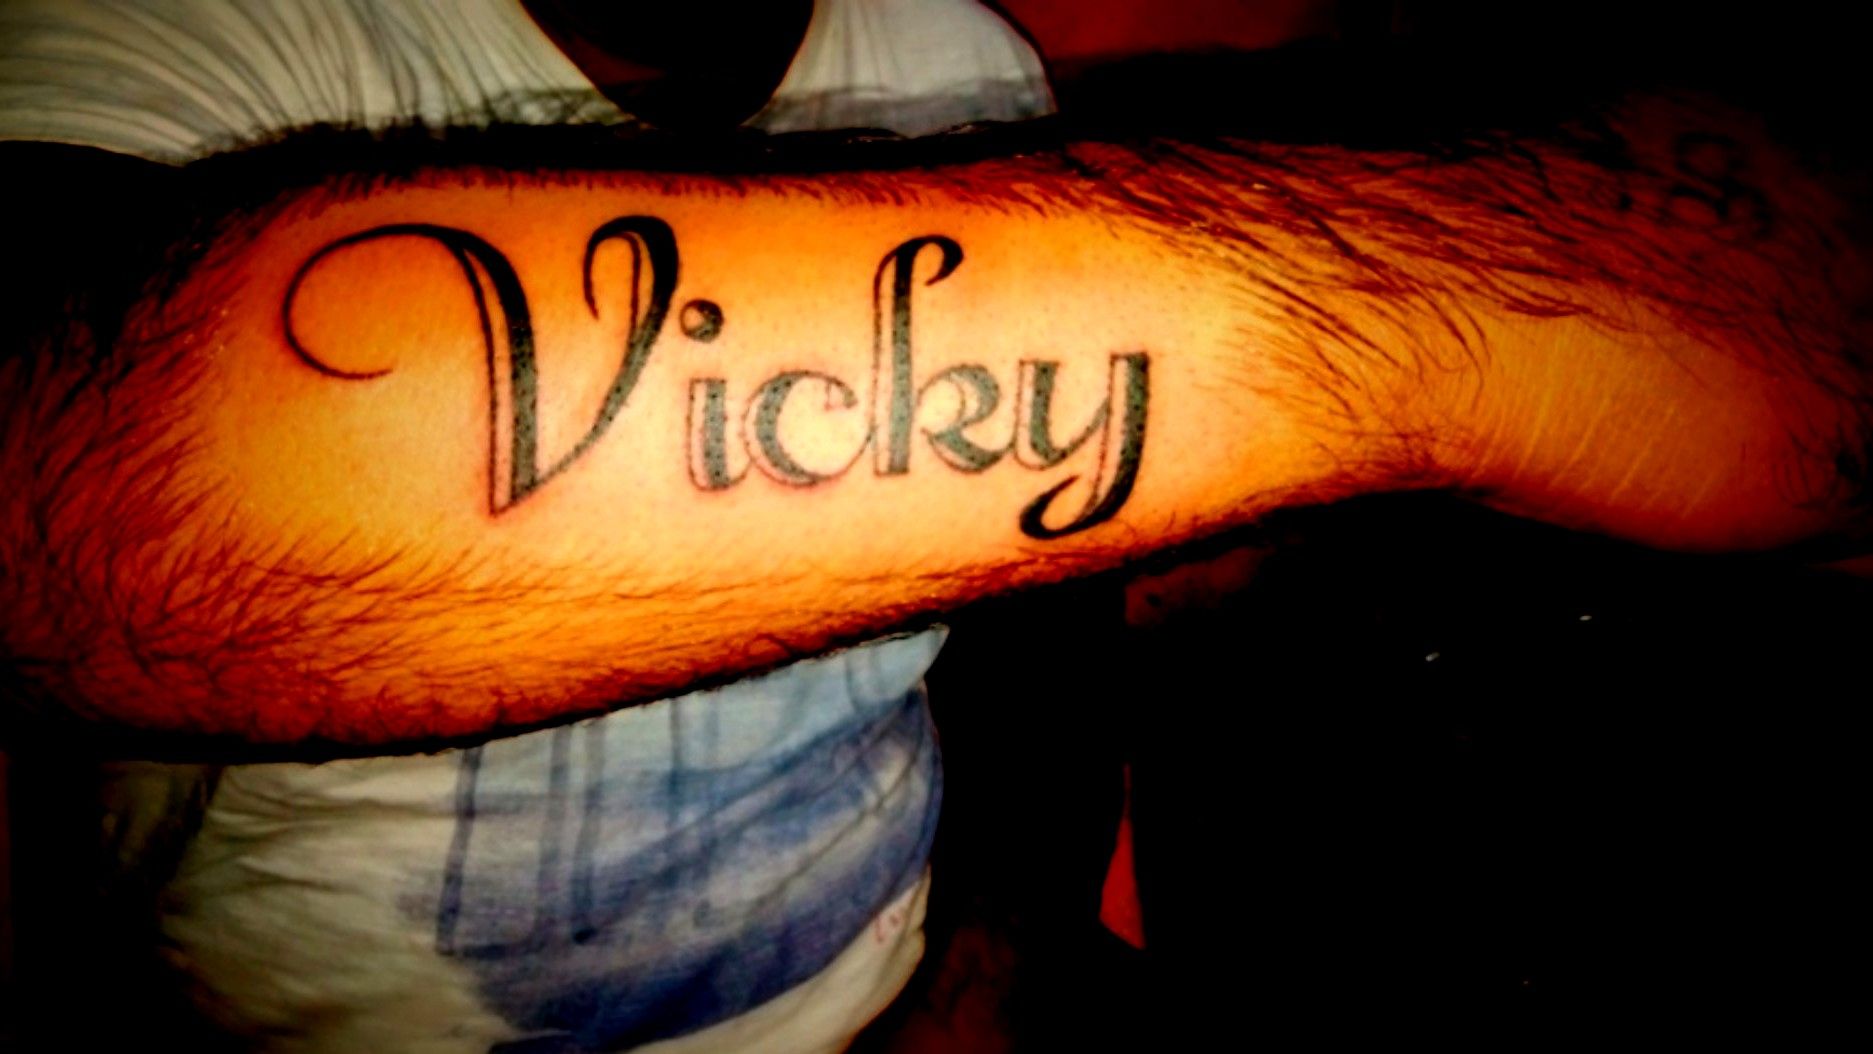 Vicky Name Tattoo  Name tattoo designs Side wrist tattoos Name tattoo